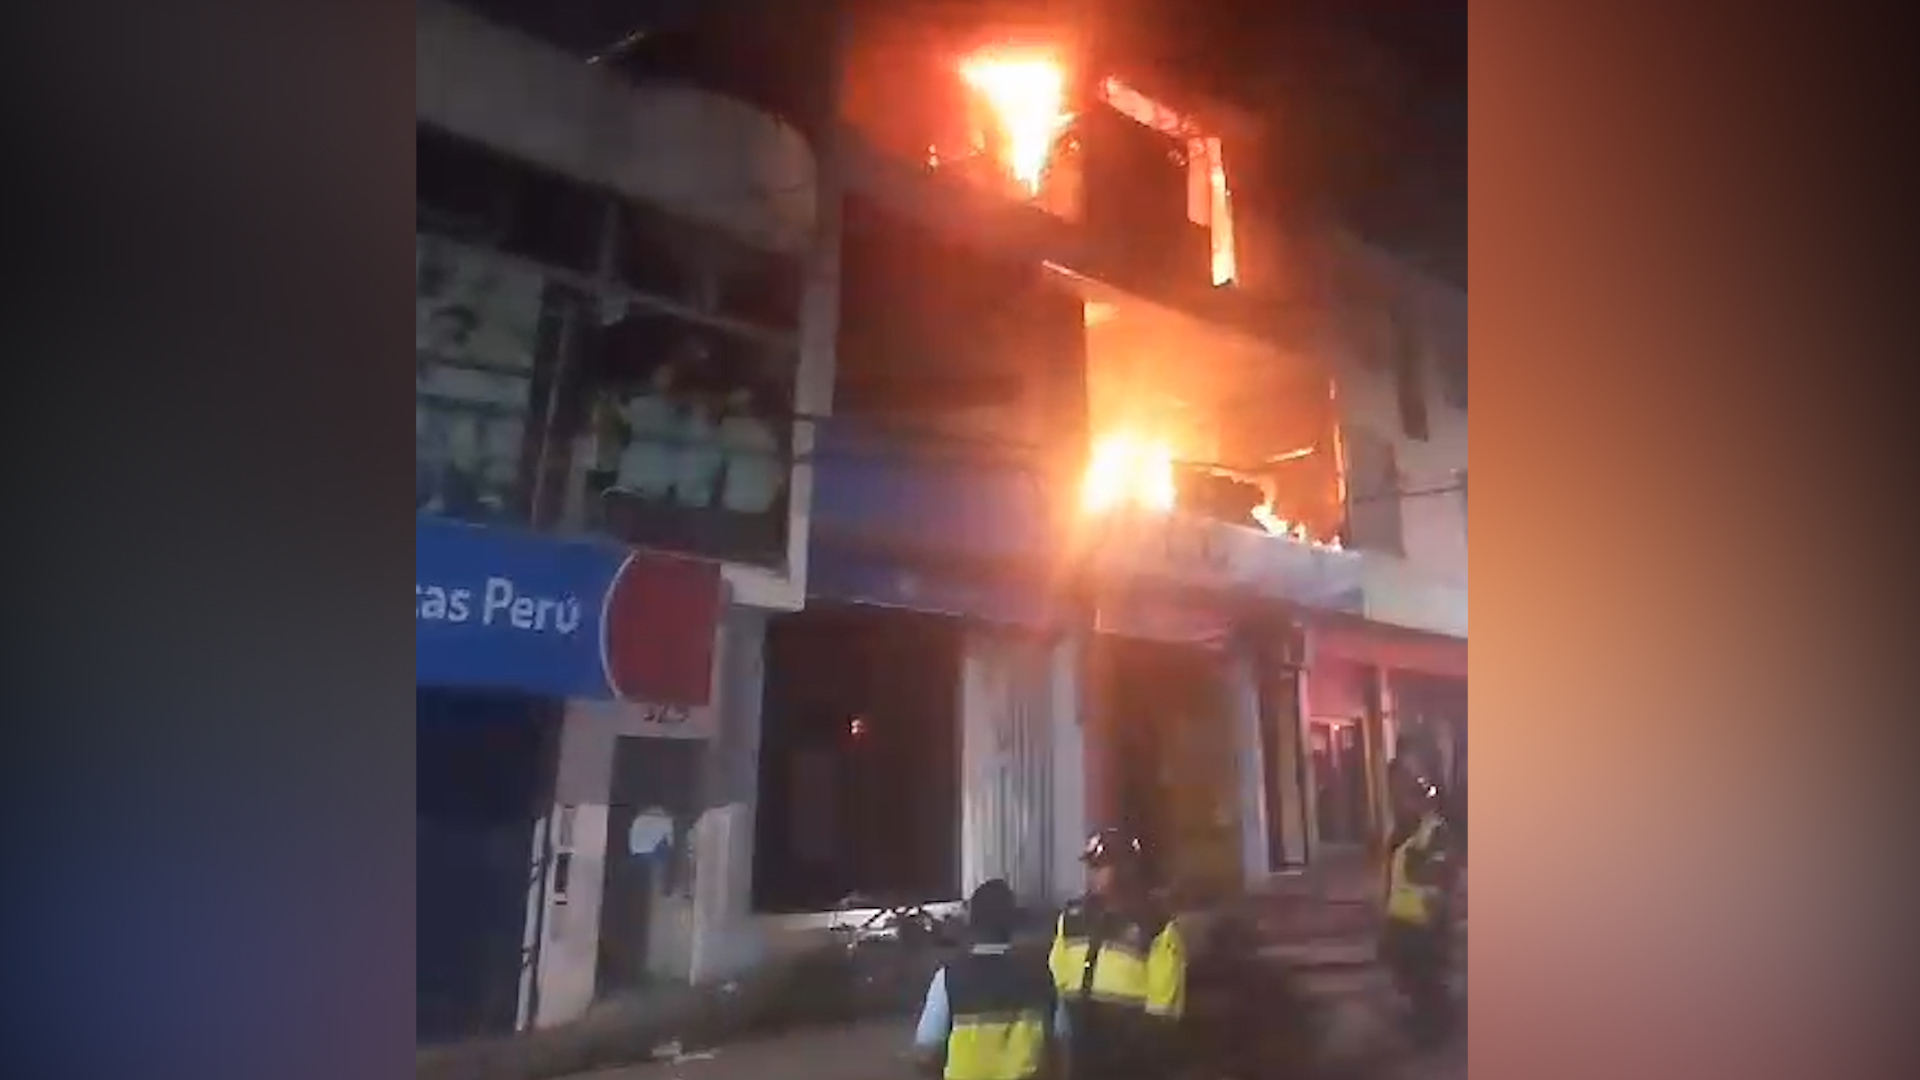 Falta de agua dificultó labor de bomberos para sofocar incendio en Tarapoto 1